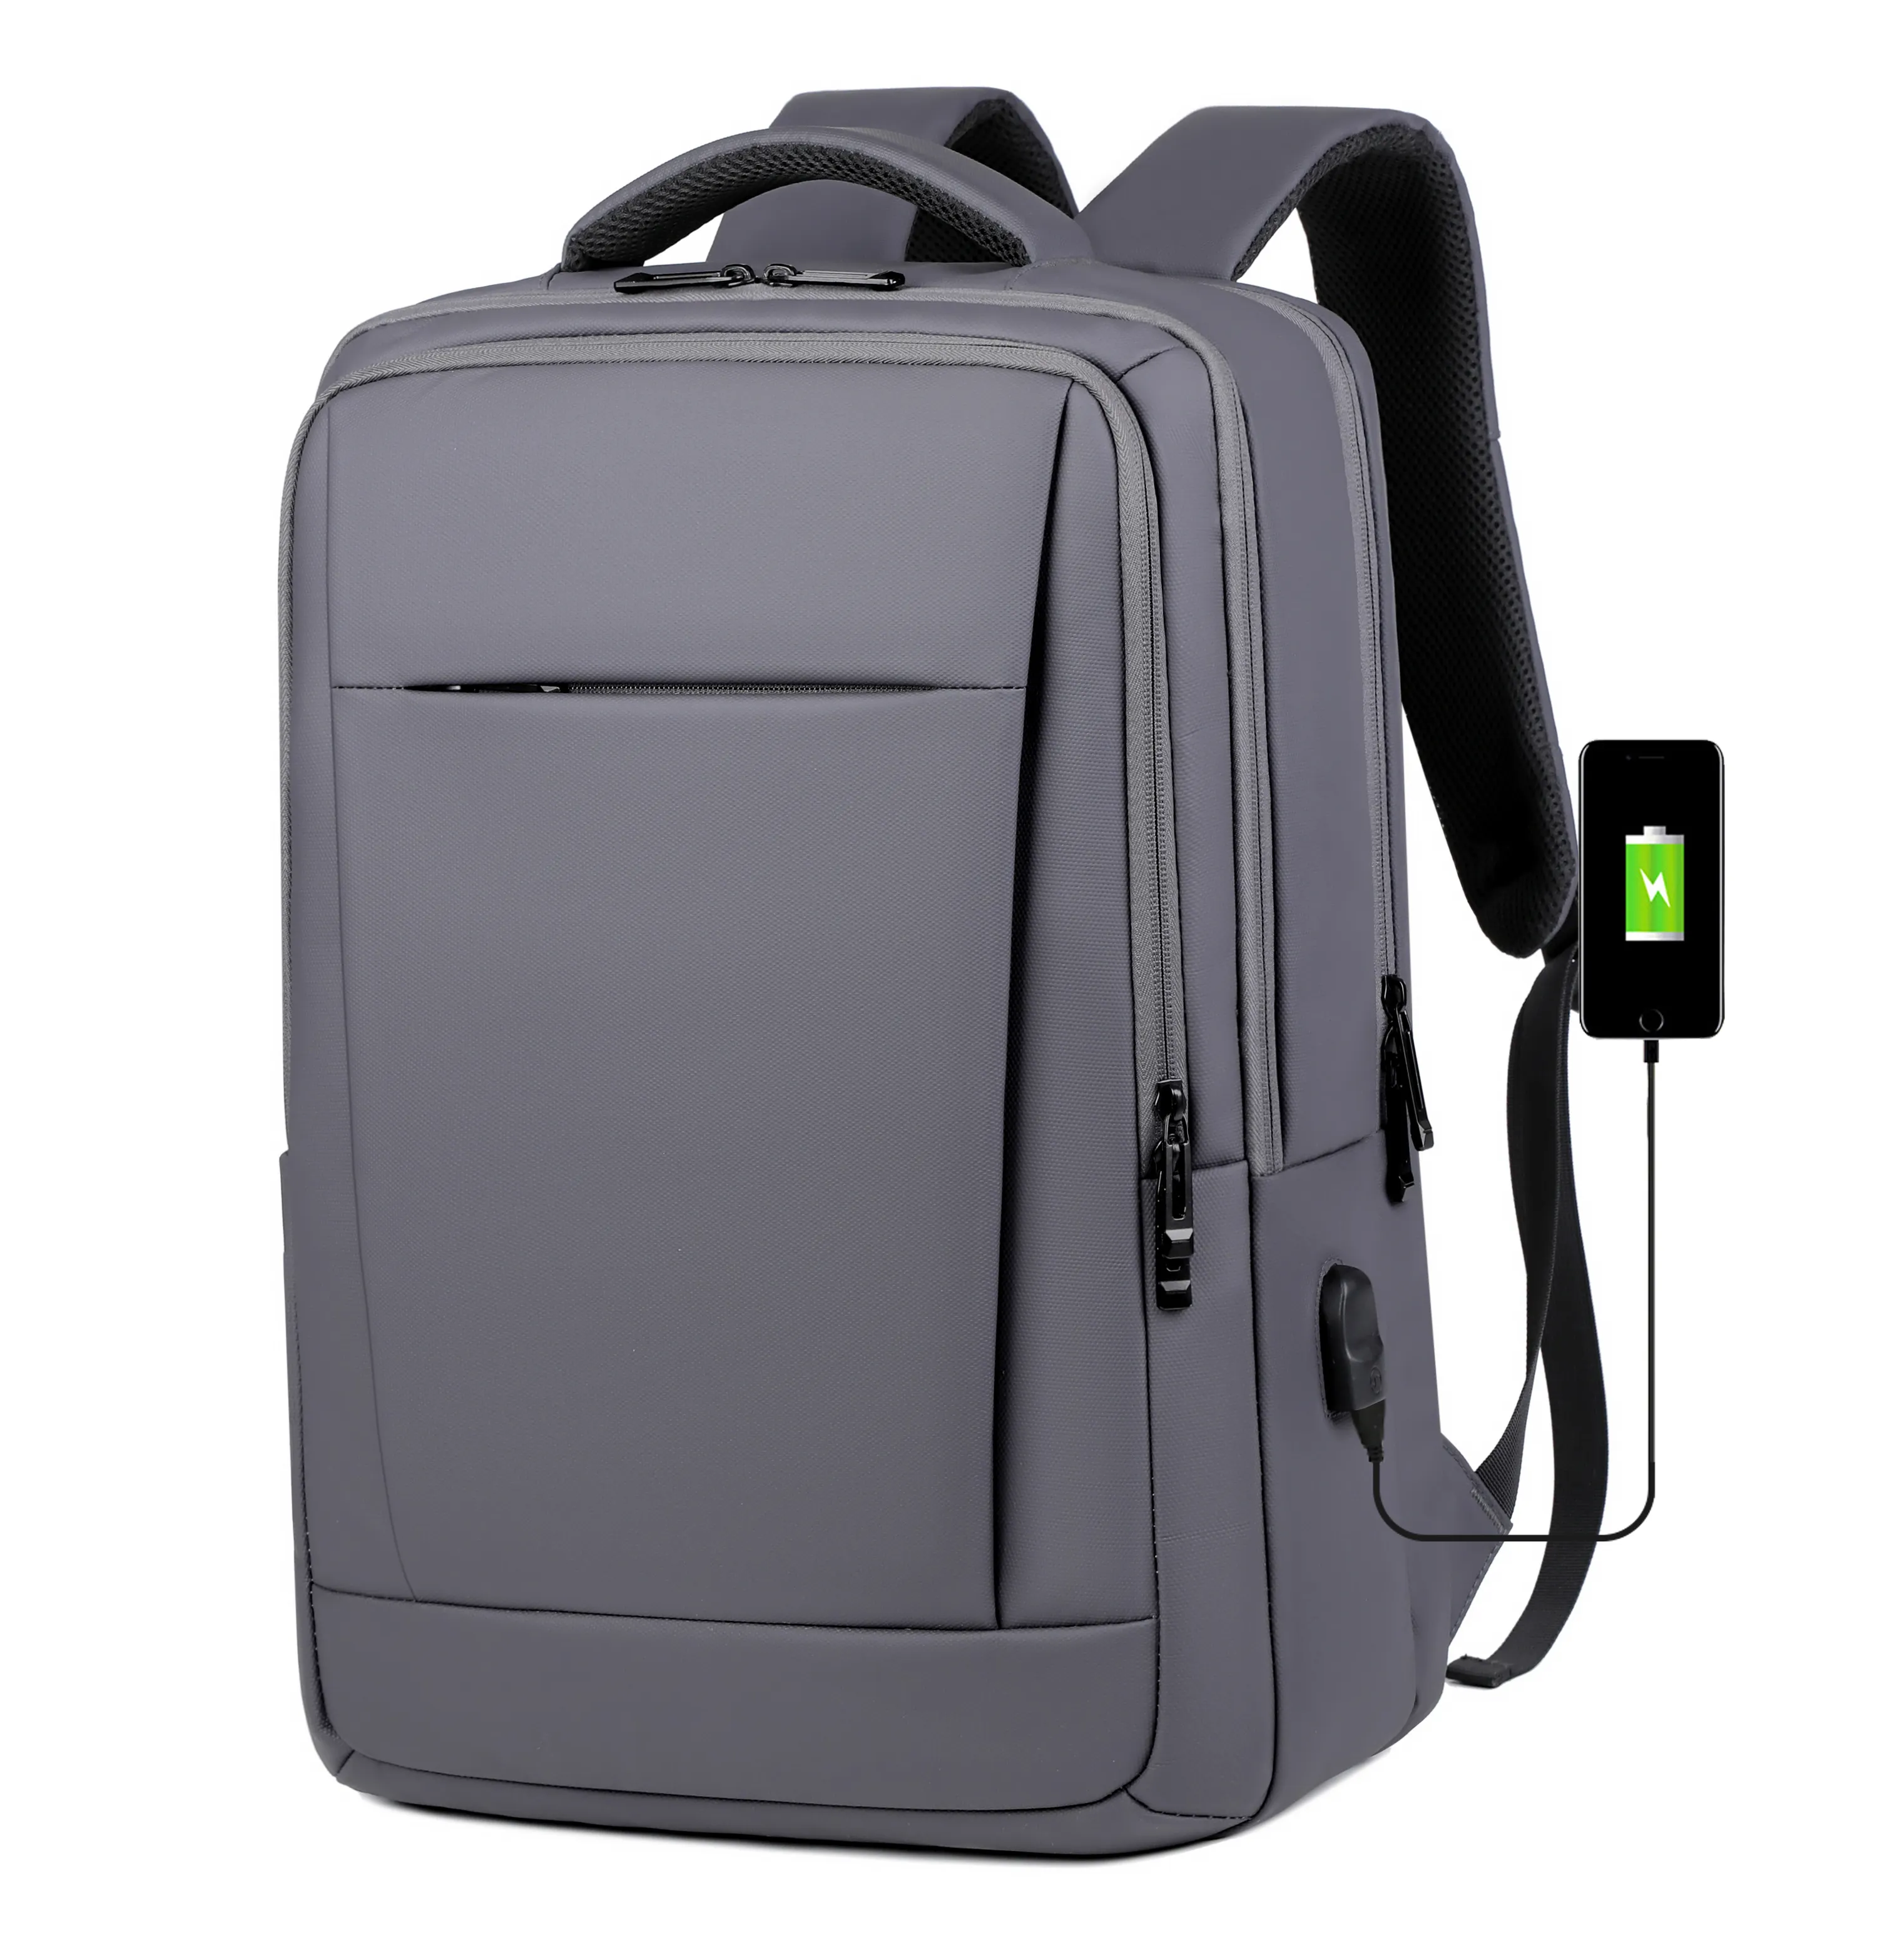 Toptan OEM fabrika su geçirmez erkek okul öğrenci rahat spor seyahat iş USB fermuar dizüstü sırt çantası